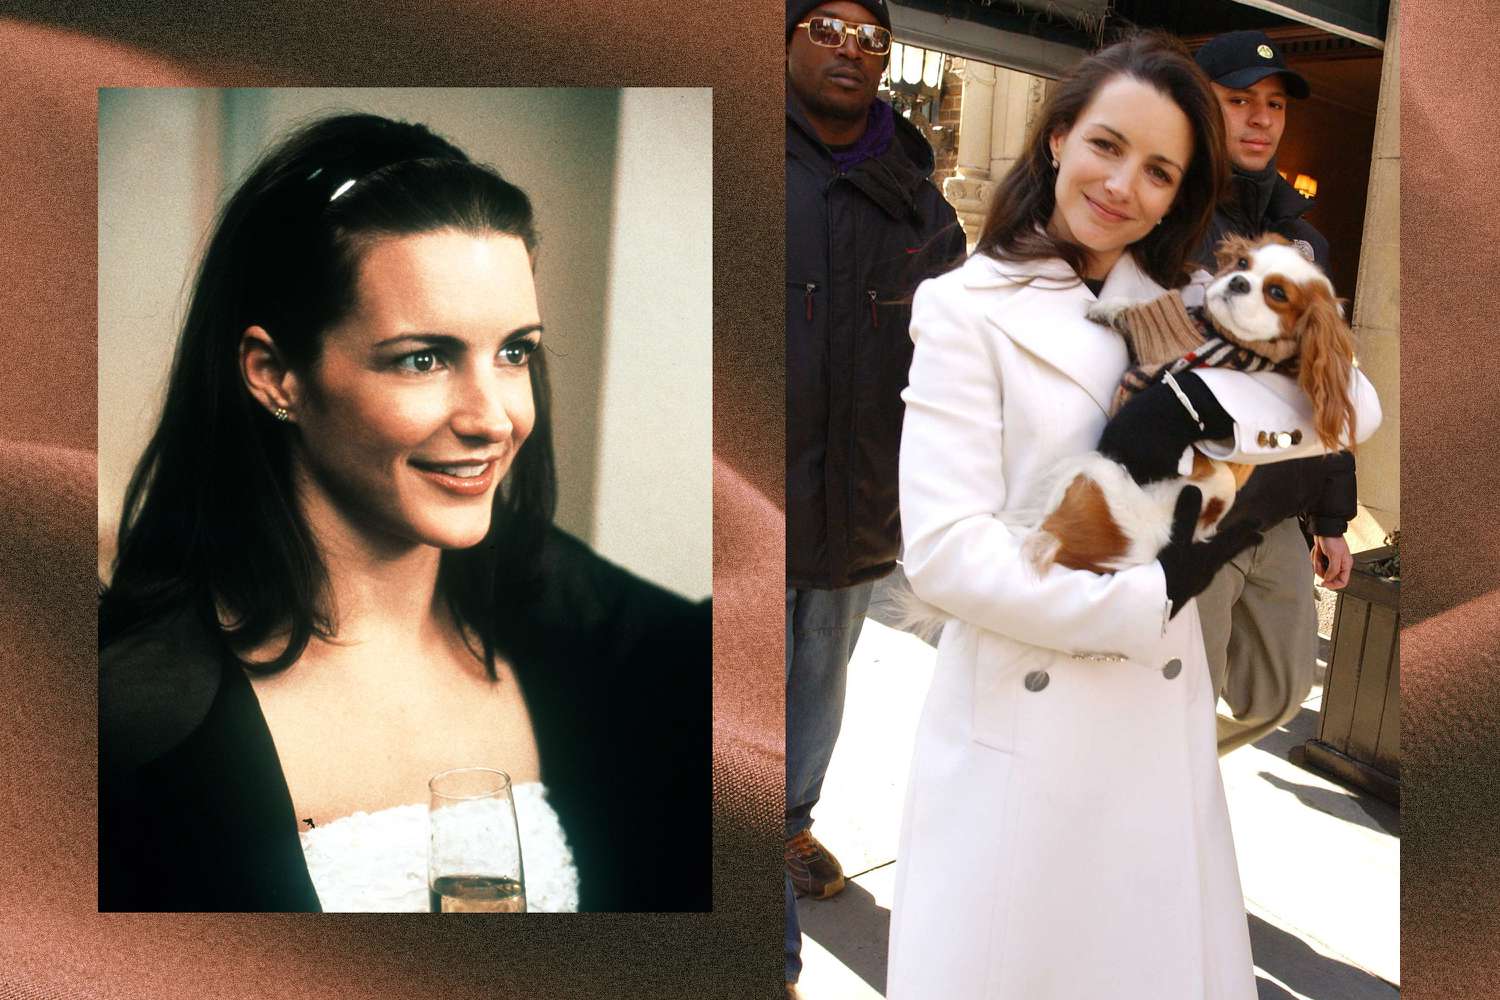 Colagem com a imagem de Charlotte York em um curativo na cabeça e um casaco branco no filme 